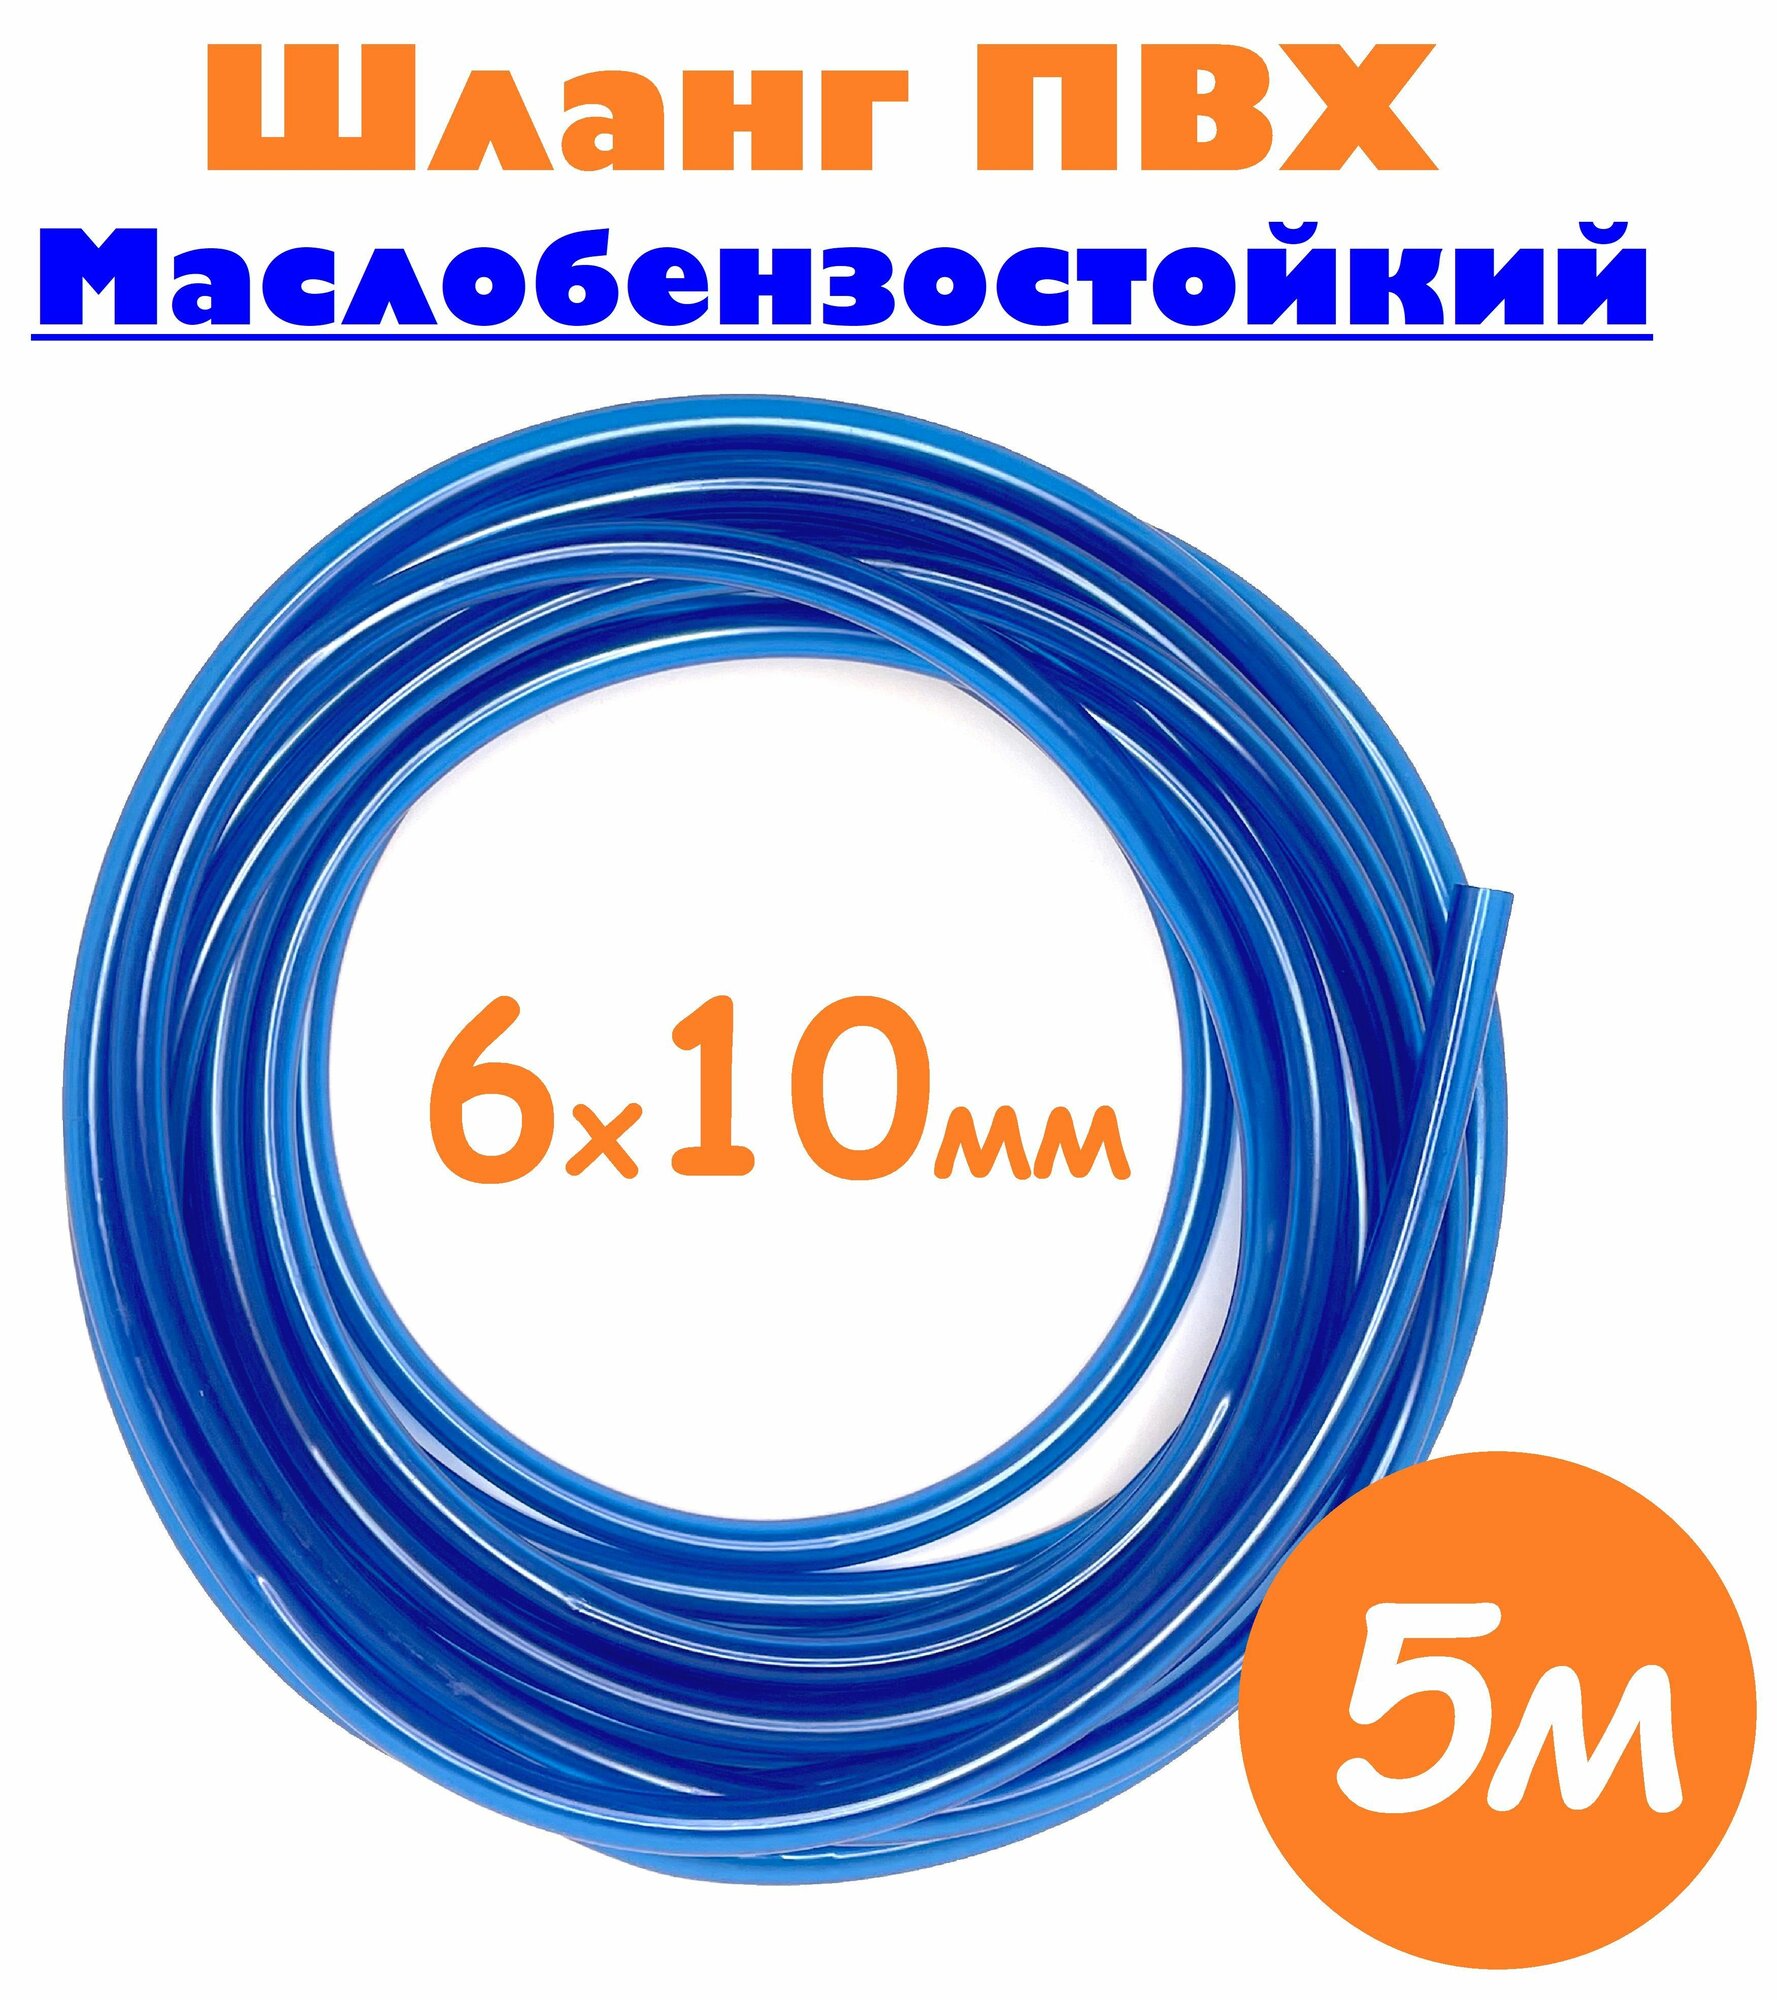 Шланг маслобензостойкий 6мм / Шланг топливный 6х10 мм синий / Трубка ПВХ пищевая 5м